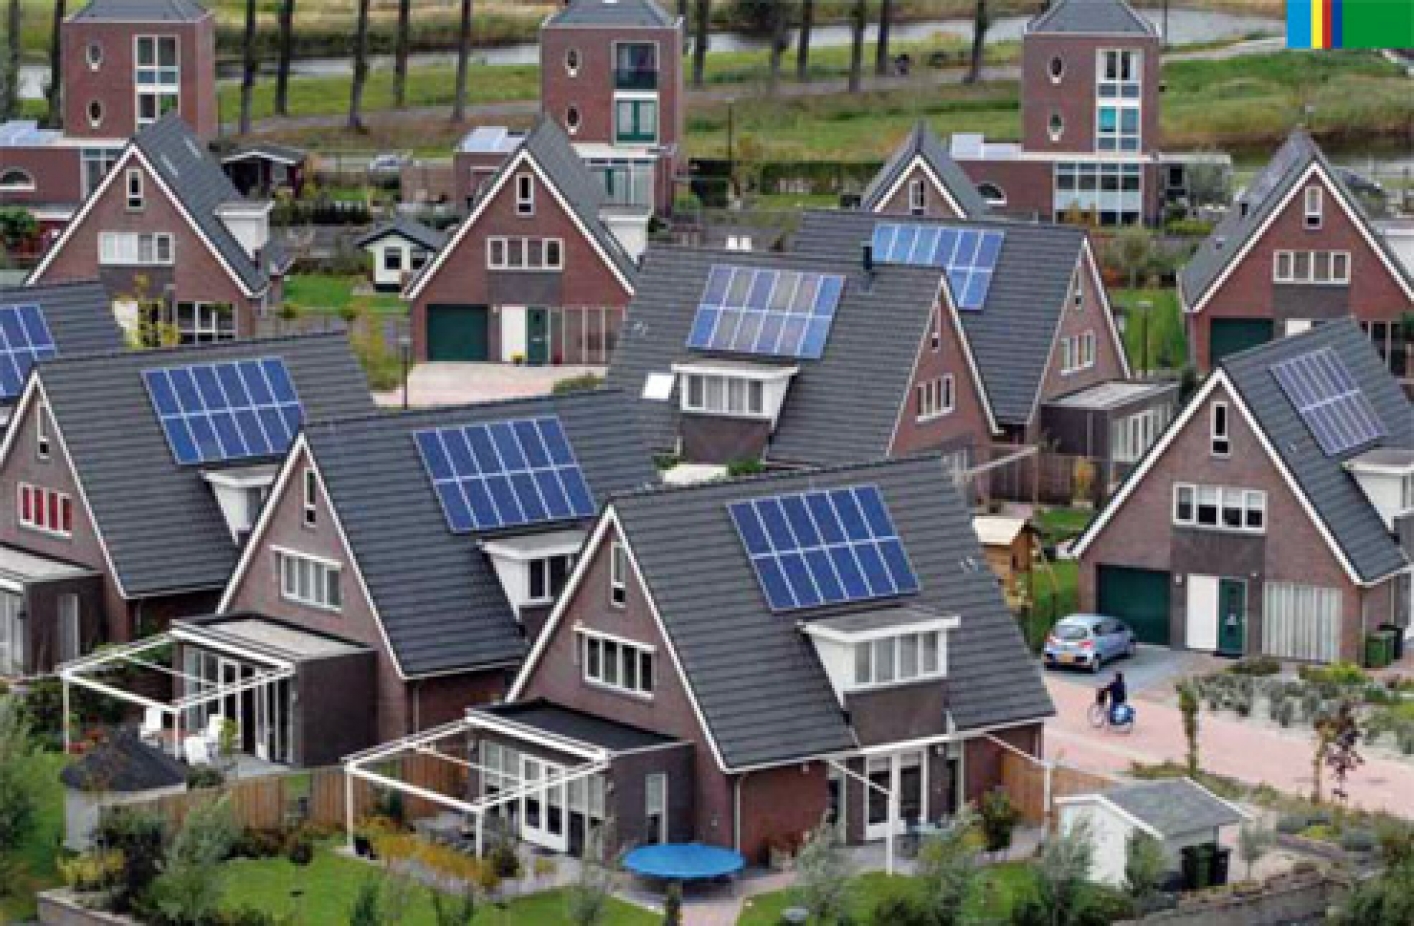 Foto Huizen met zonnepanelen